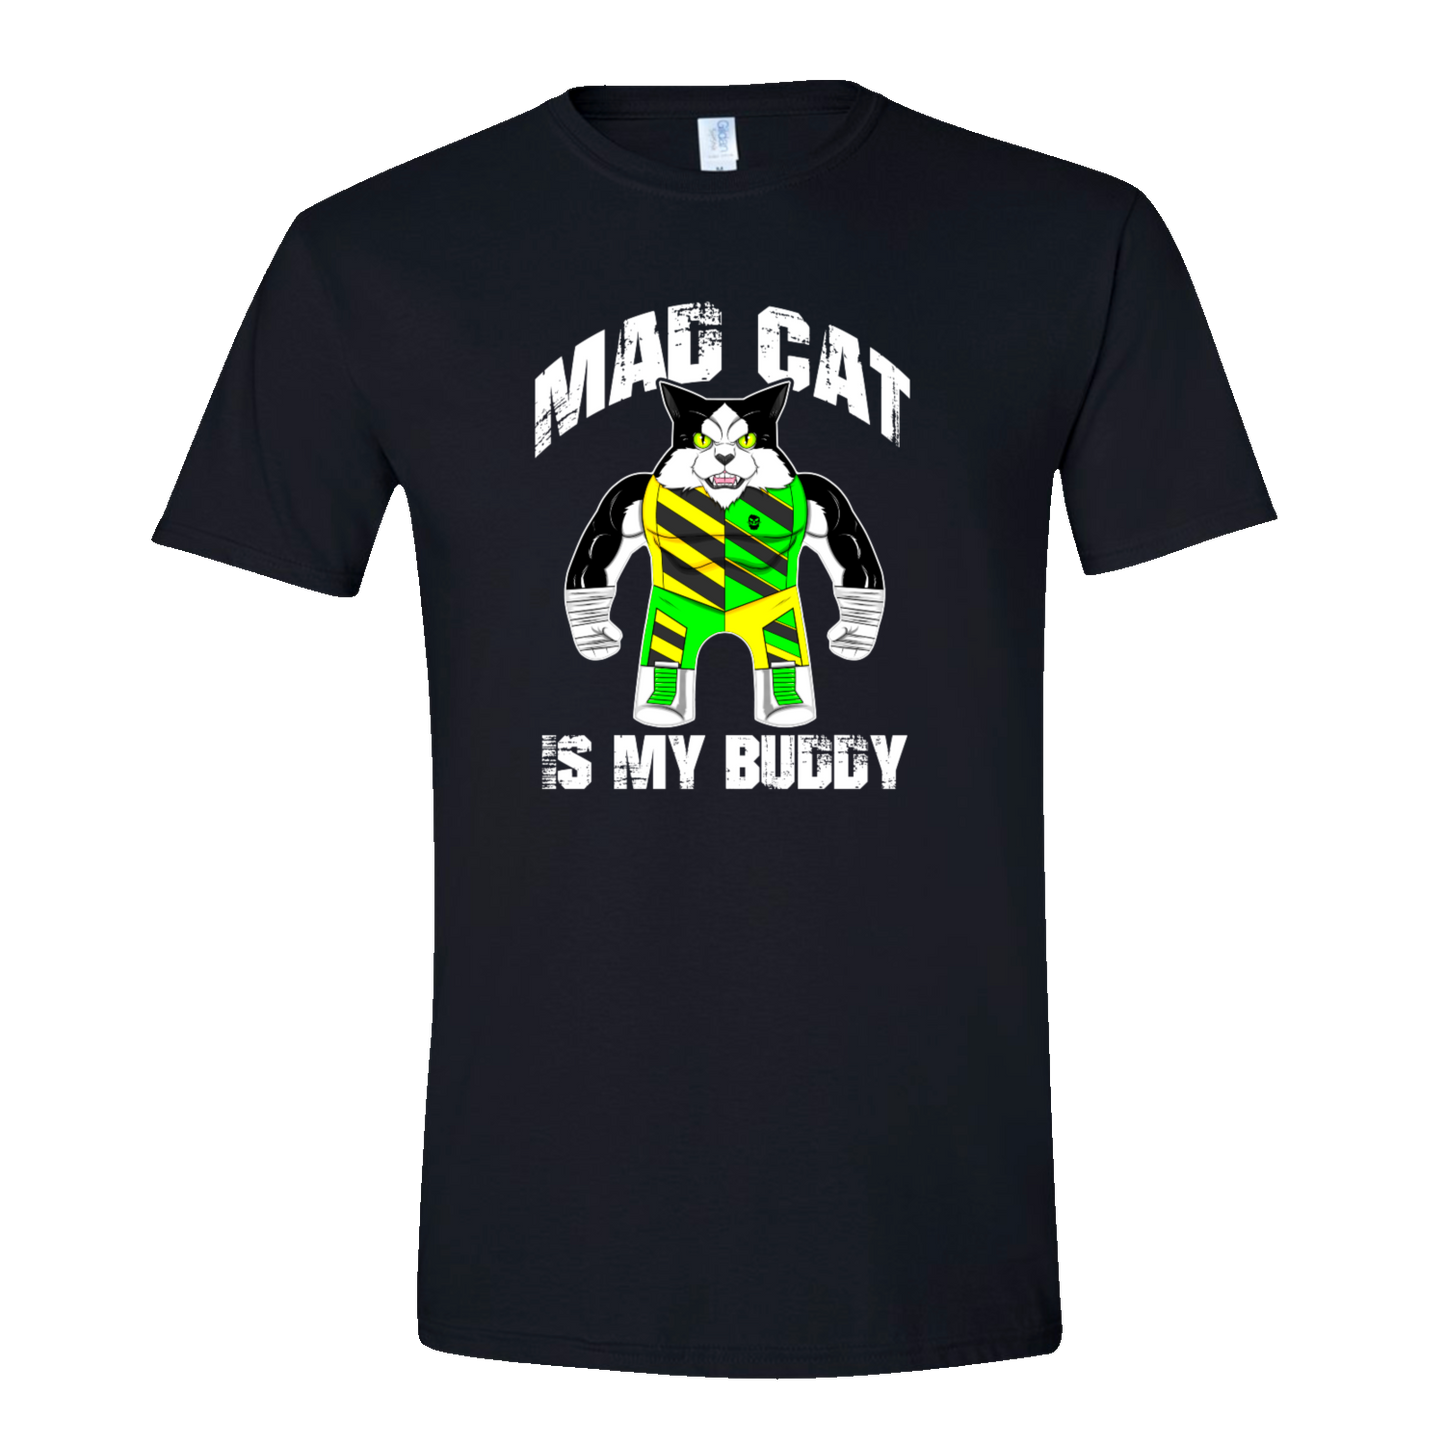 Madcat Buddy (T-Shirt)